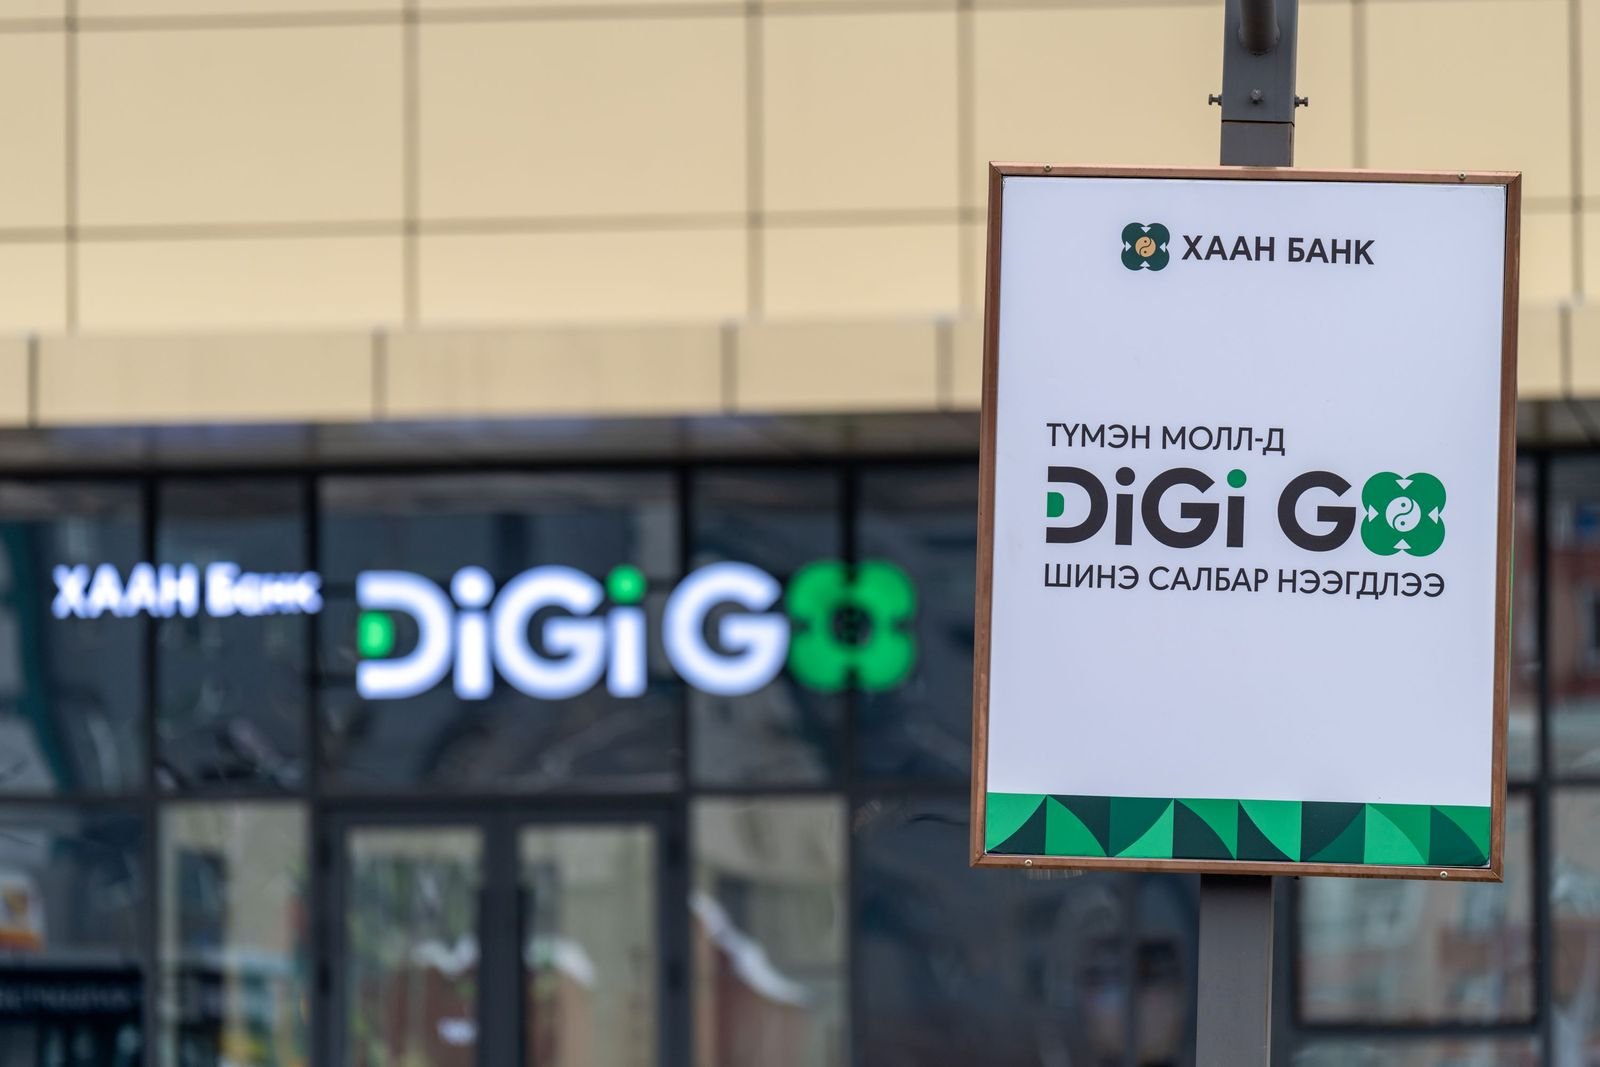 ХААН Банкны “Digi Go” дижитал салбар нийслэлд 4 байршилд үүдээ нээлээ